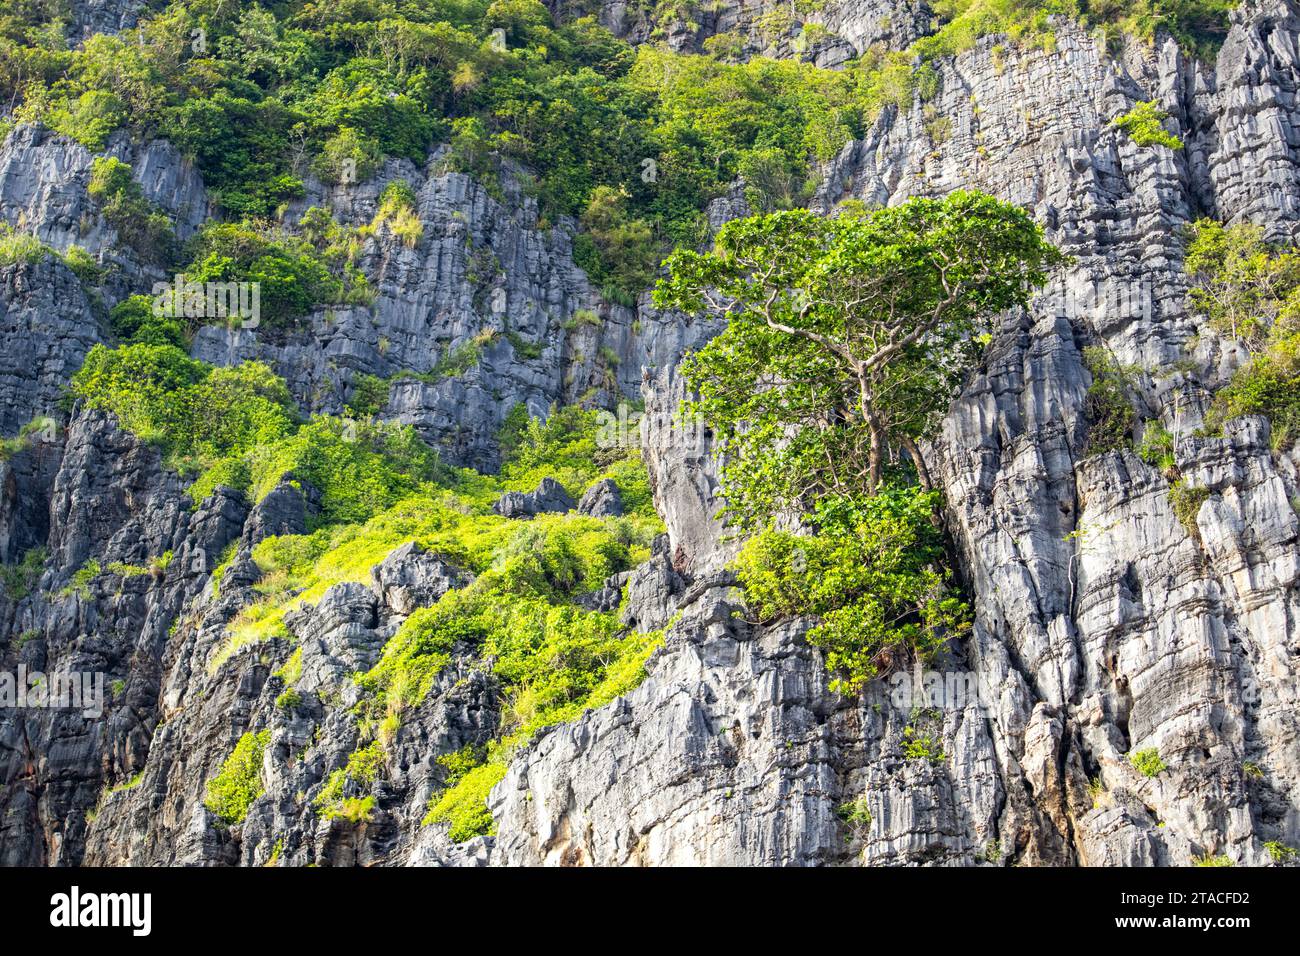 Ein detaillierter Blick auf die grünen Felsen in Maya Bay auf den Phi Phi Inseln - einer der berühmtesten Orte in Thailand Stockfoto